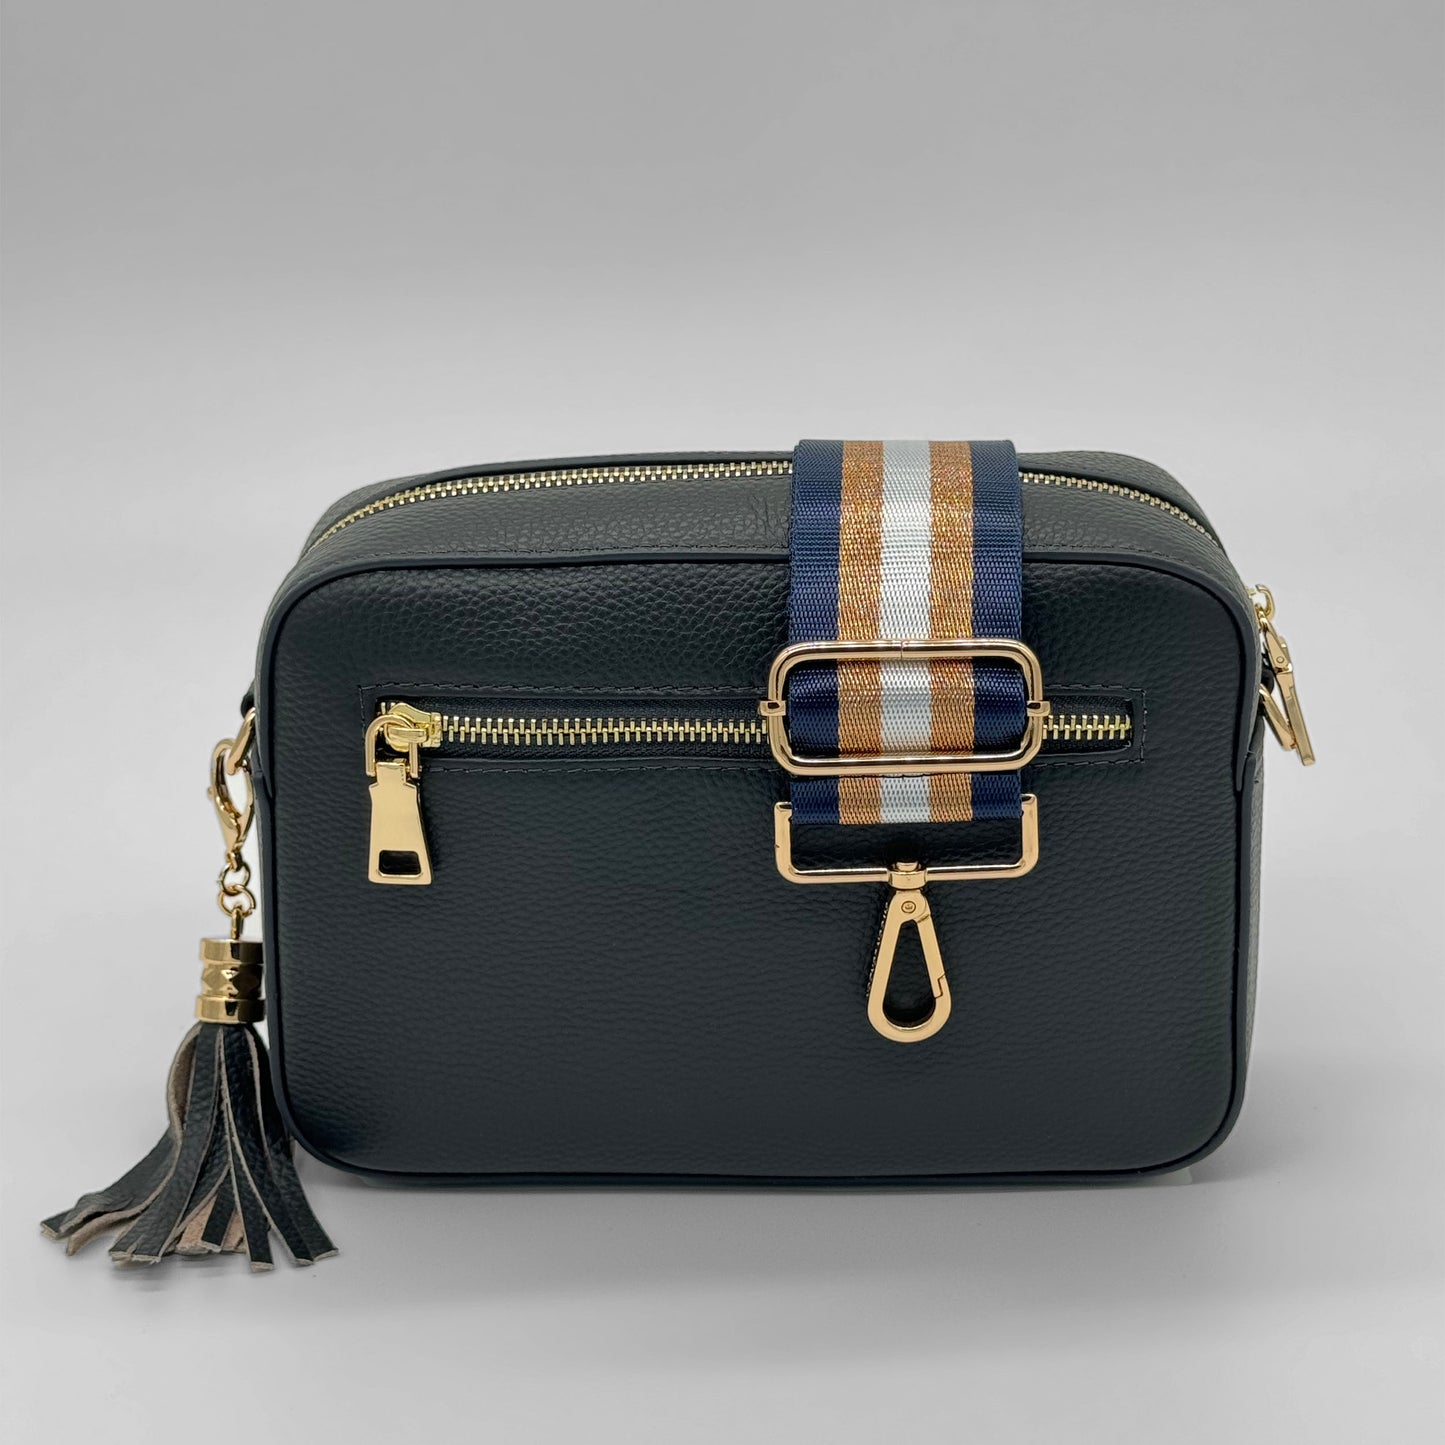 Bag with Navy & Gold Metallic Stripe Bag Strap